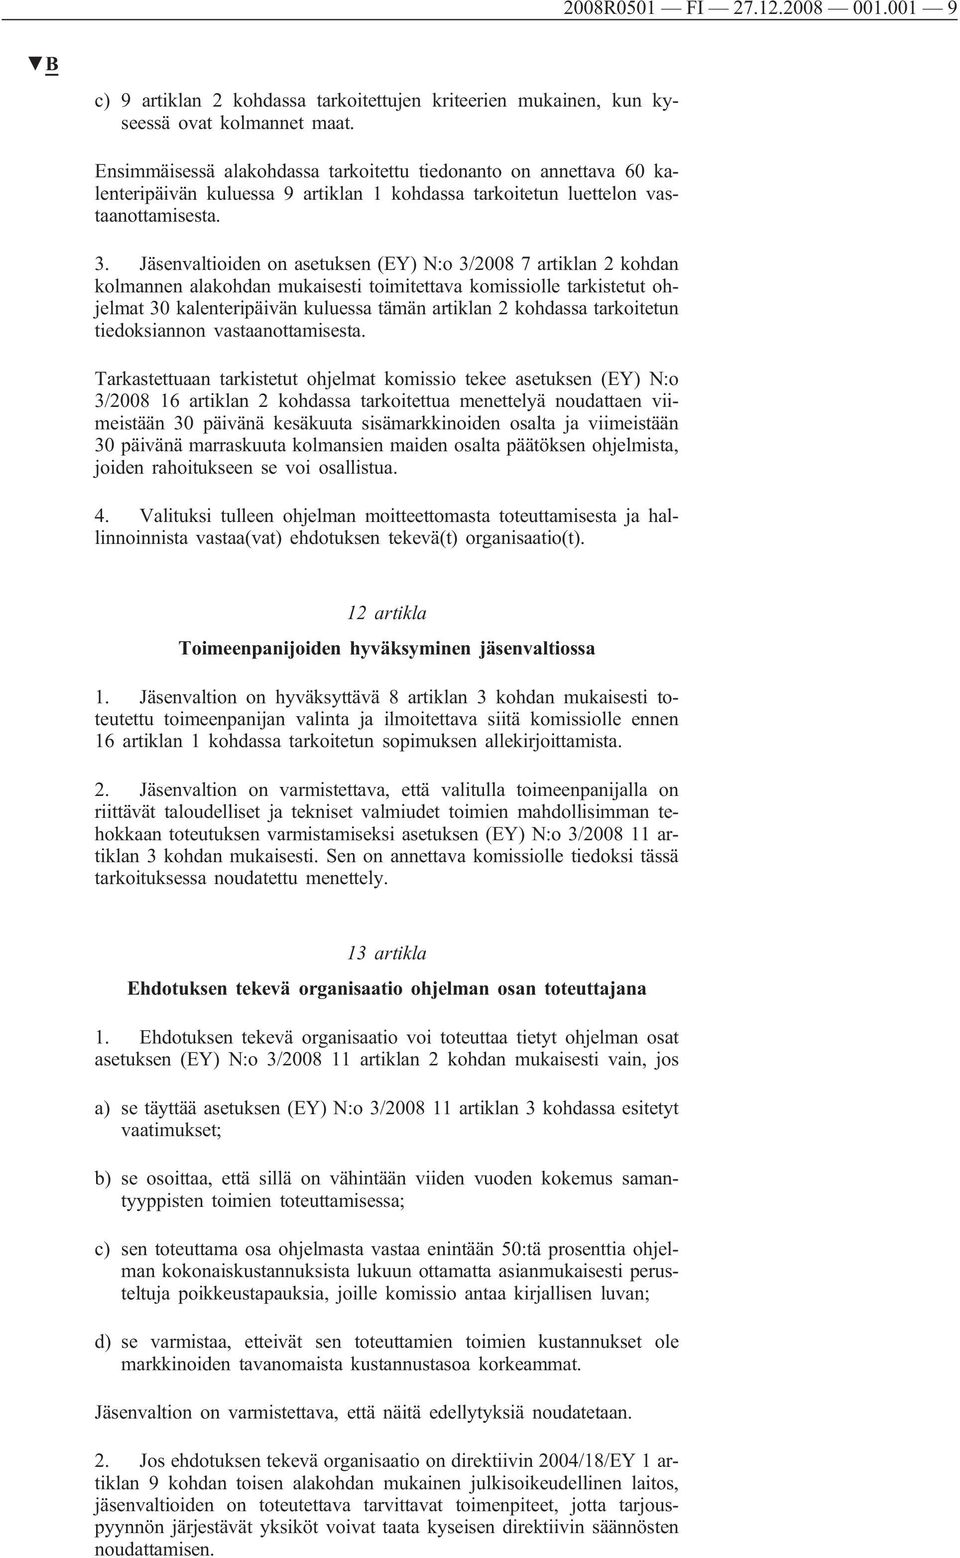 Jäsenvaltioiden on asetuksen (EY) N:o 3/2008 7 artiklan 2 kohdan kolmannen alakohdan mukaisesti toimitettava komissiolle tarkistetut ohjelmat 30 kalenteripäivän kuluessa tämän artiklan 2 kohdassa